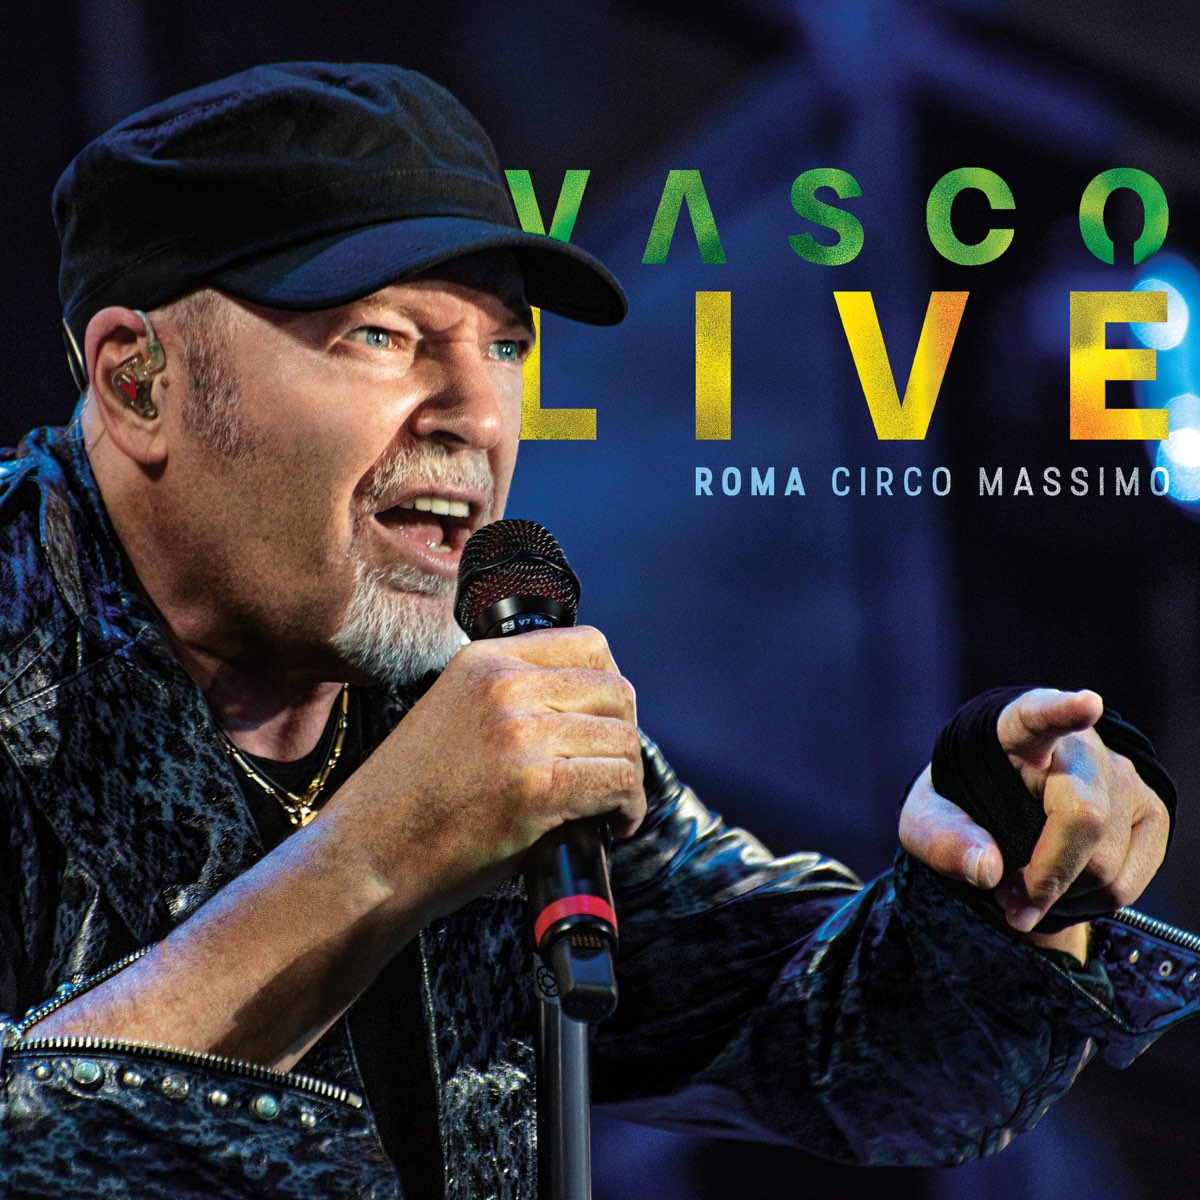 ‎VASCO LIVE Roma Circo Massimo 2022 by Vasco Rossi on Apple Music